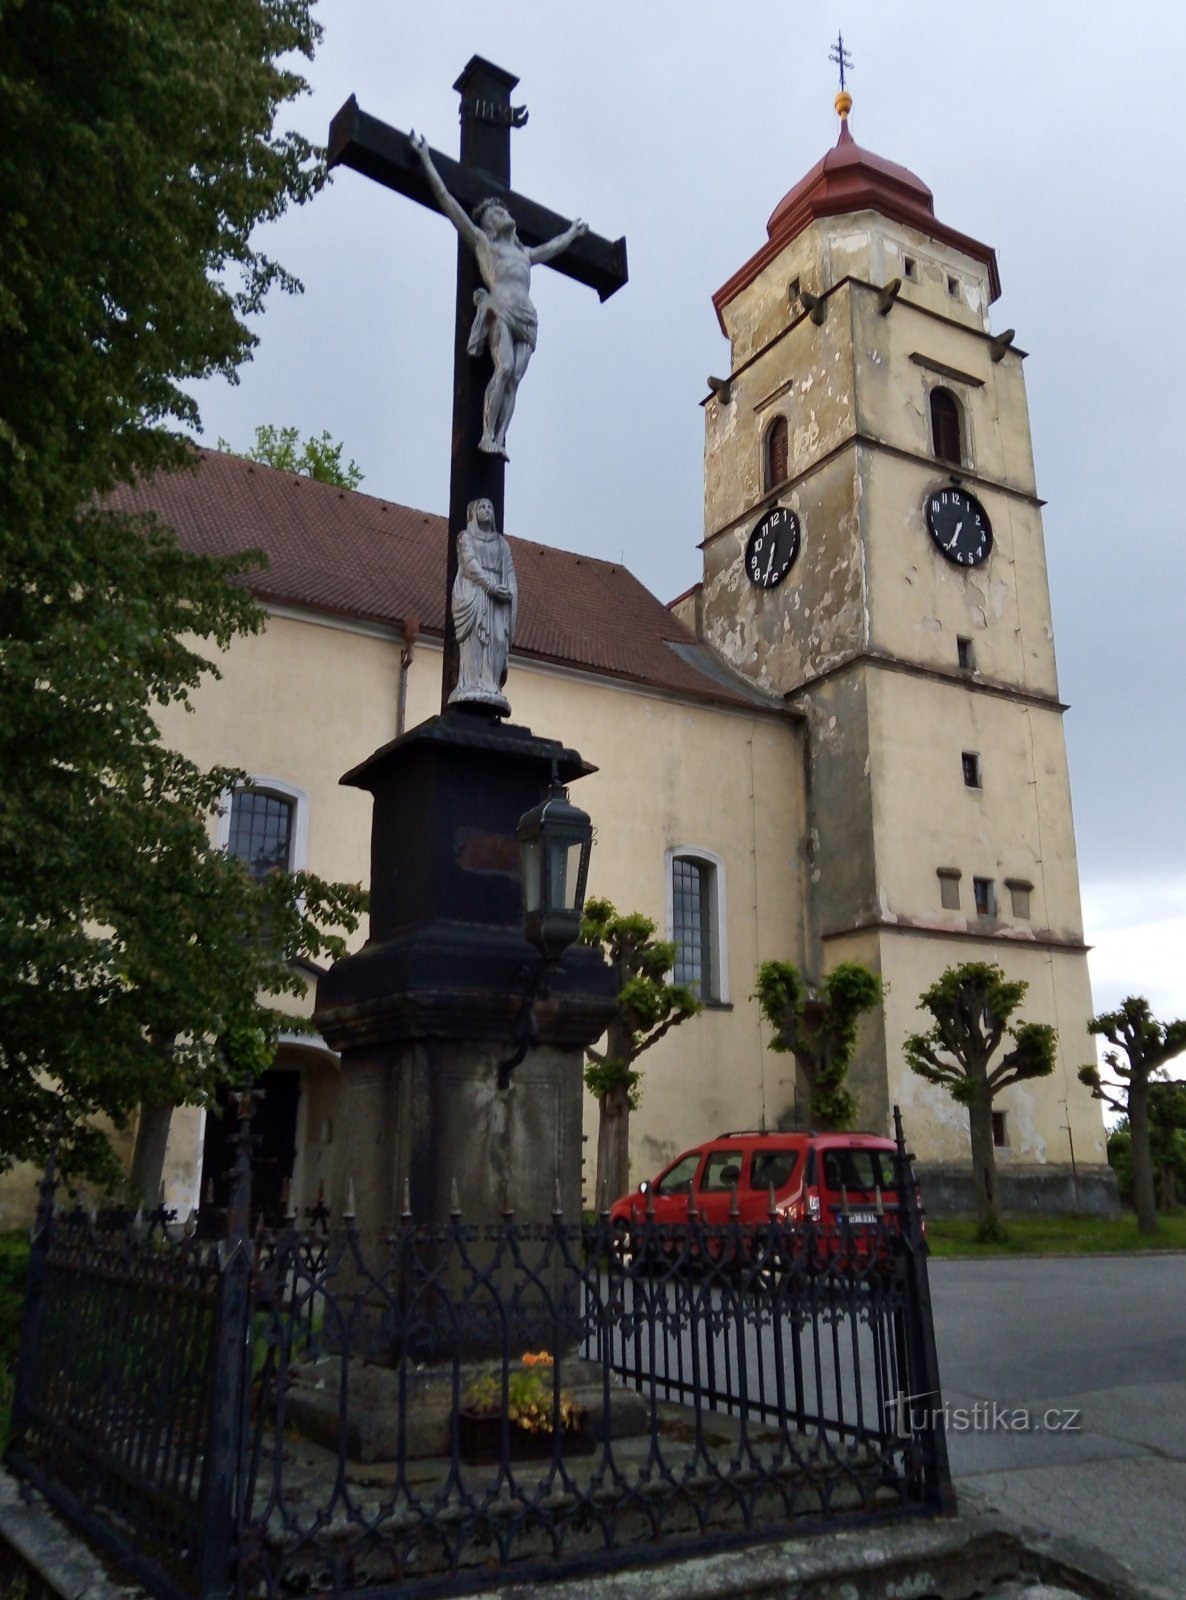 церковь и крест перед ней внесены в список памятников